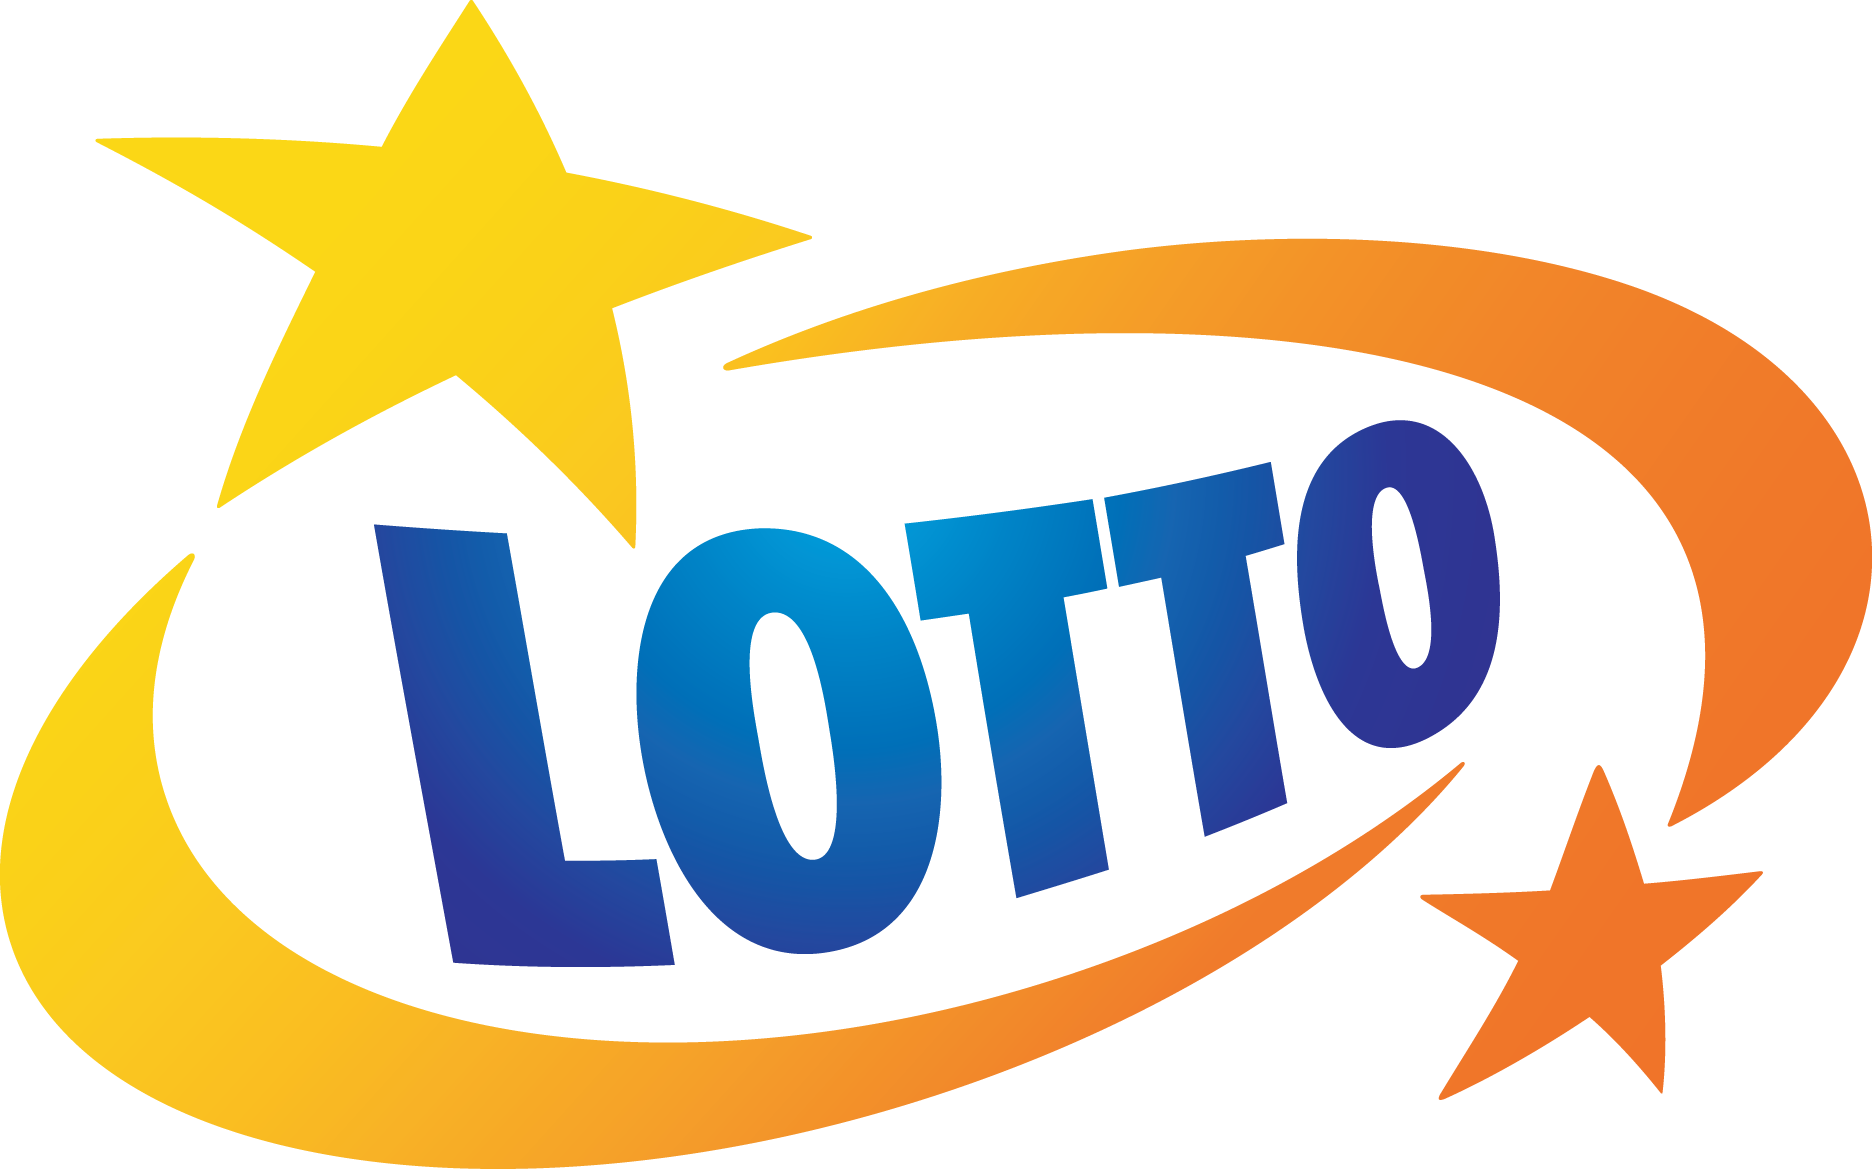 Totalizator Sportowy właściciel marki LOTTO